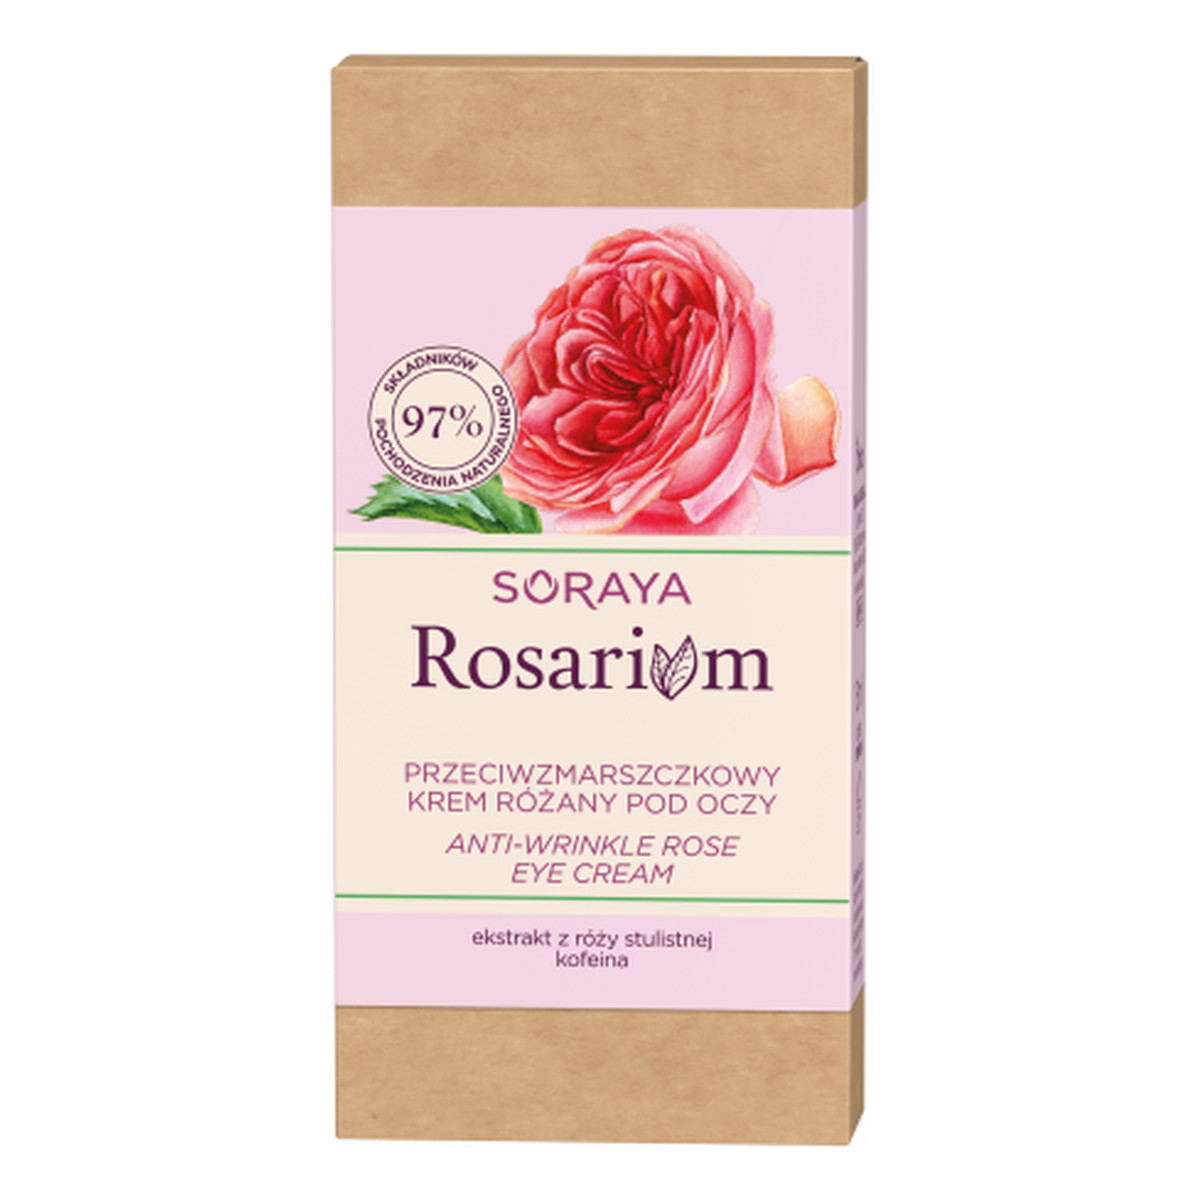 Soraya Rosarium przeciwzmarszczkowy krem różany pod oczy 15ml